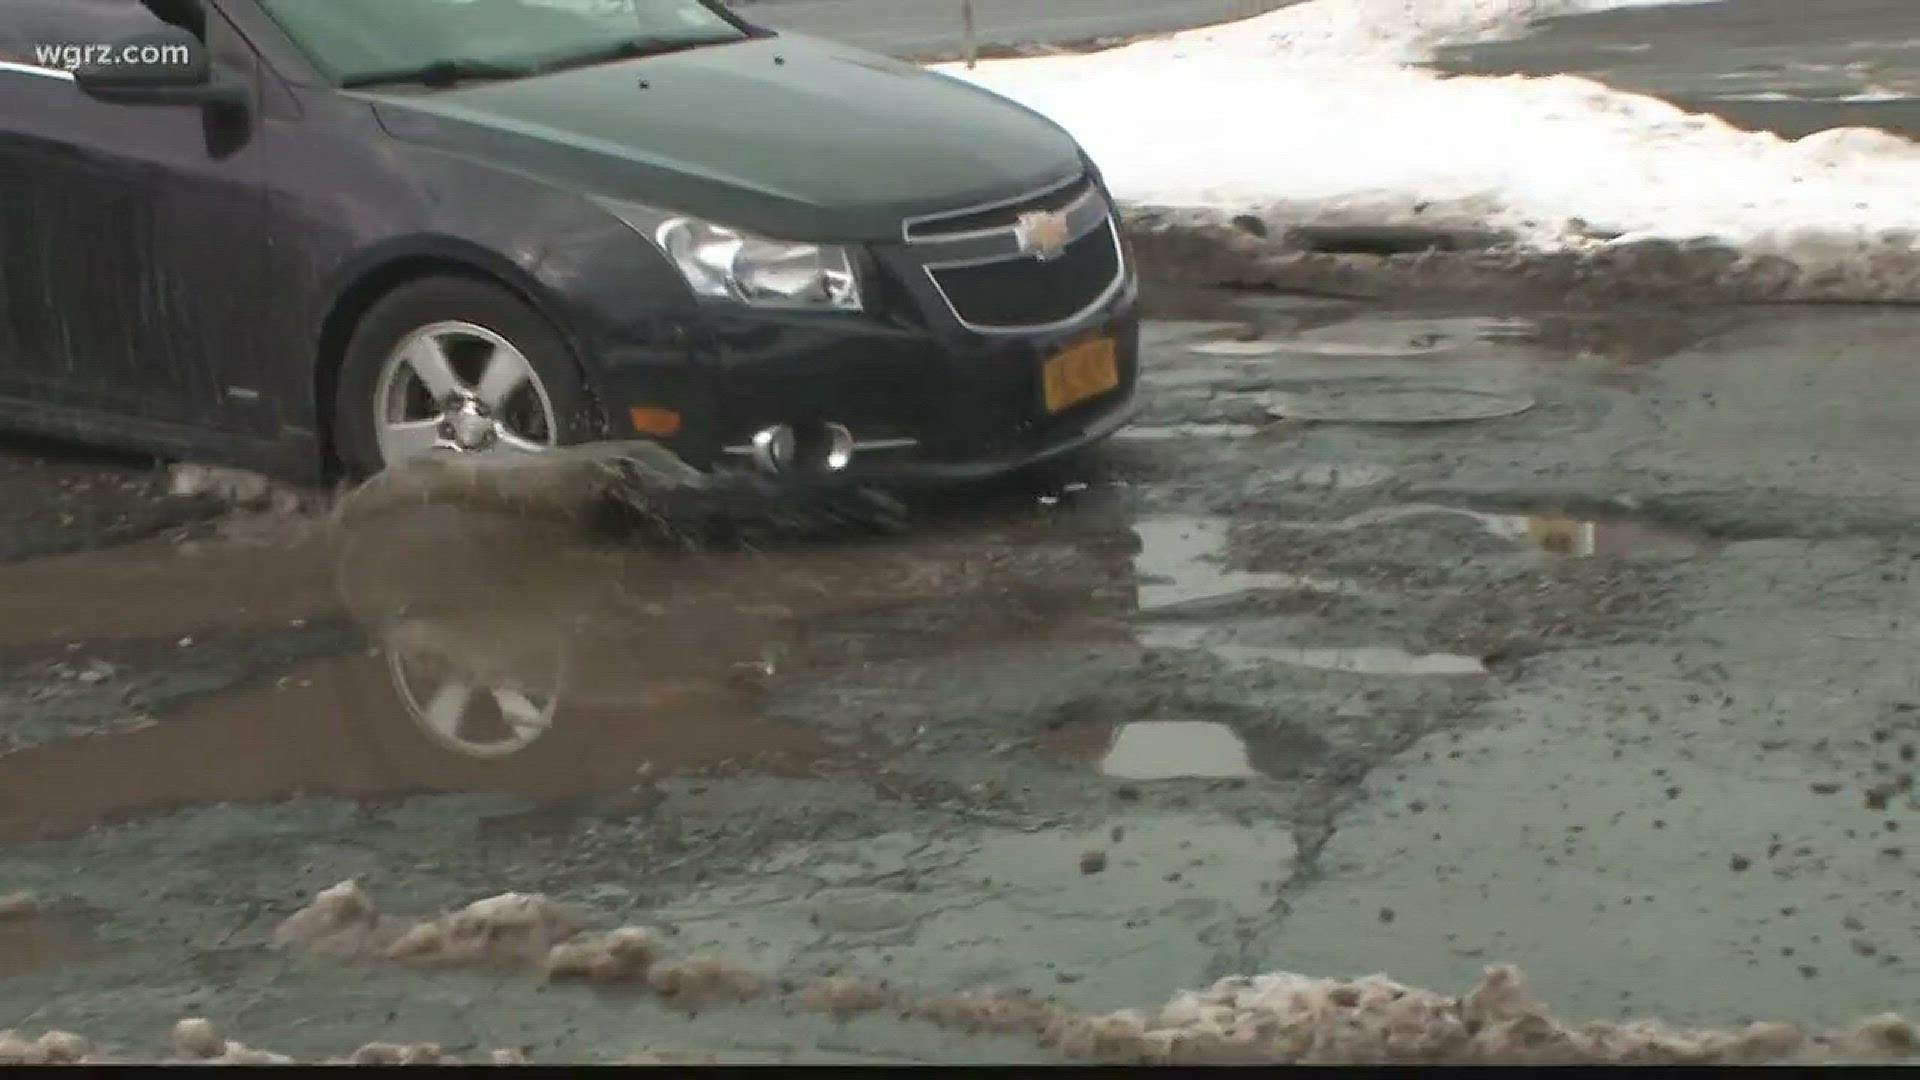 the worst pothole roads in WNY